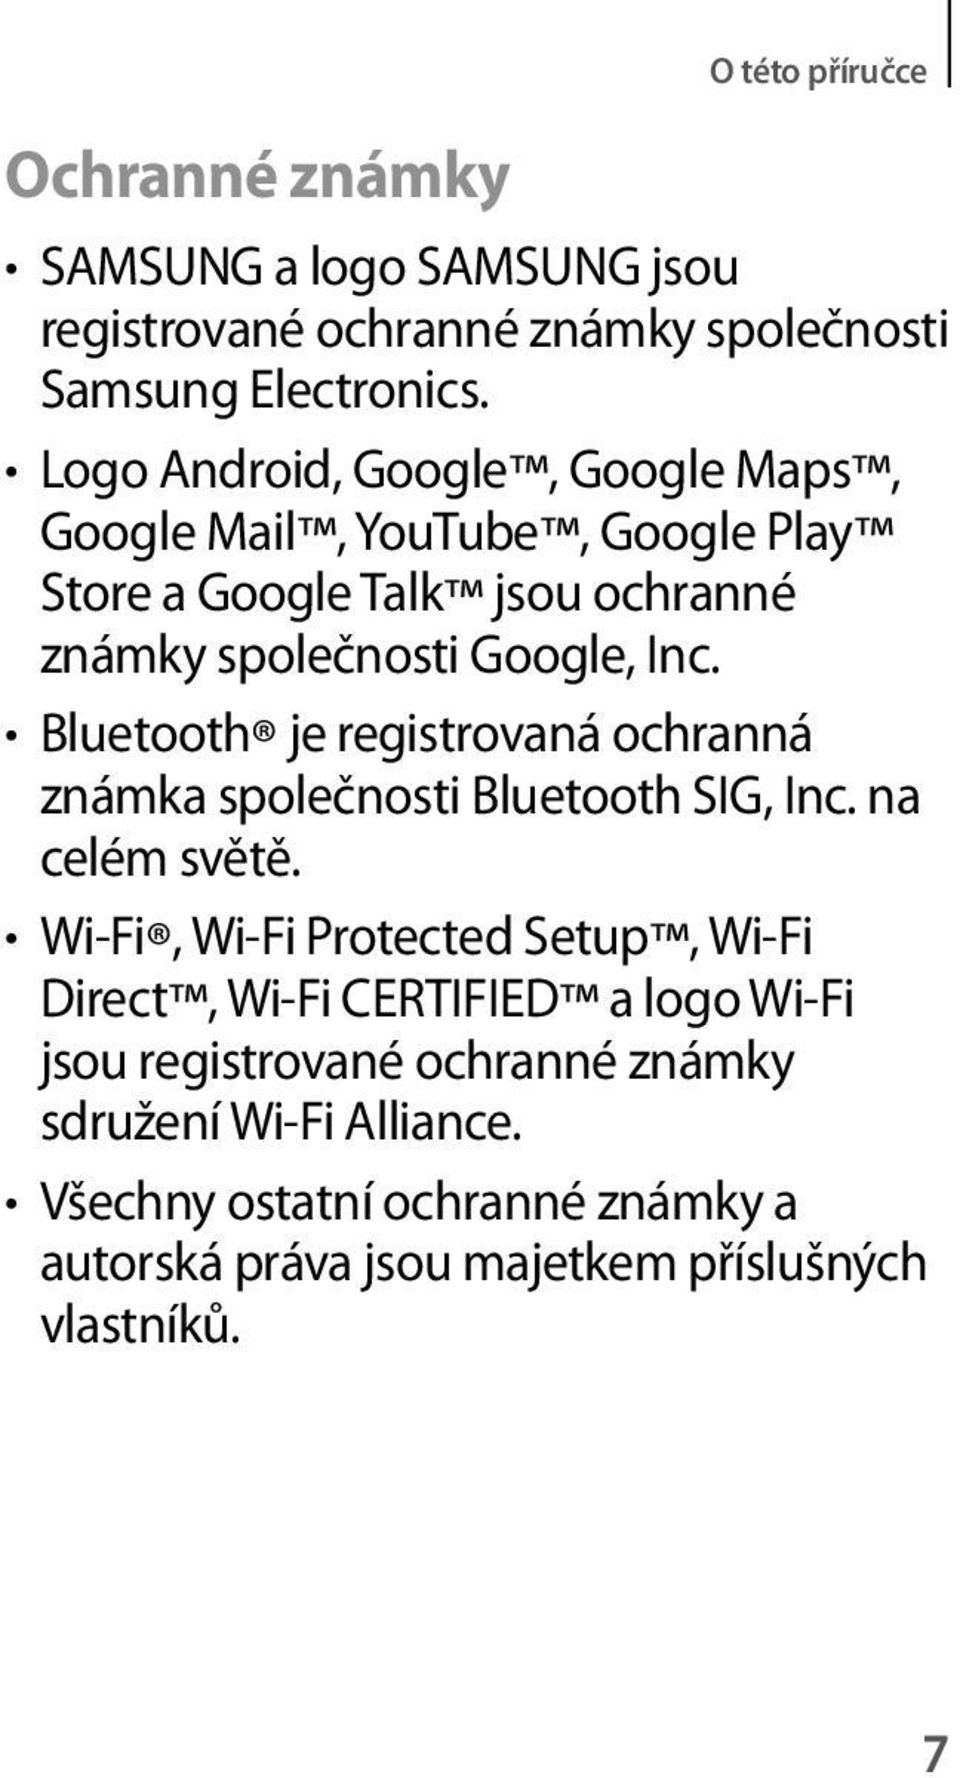 Bluetooth je registrovaná ochranná známka společnosti Bluetooth SIG, Inc. na celém světě.